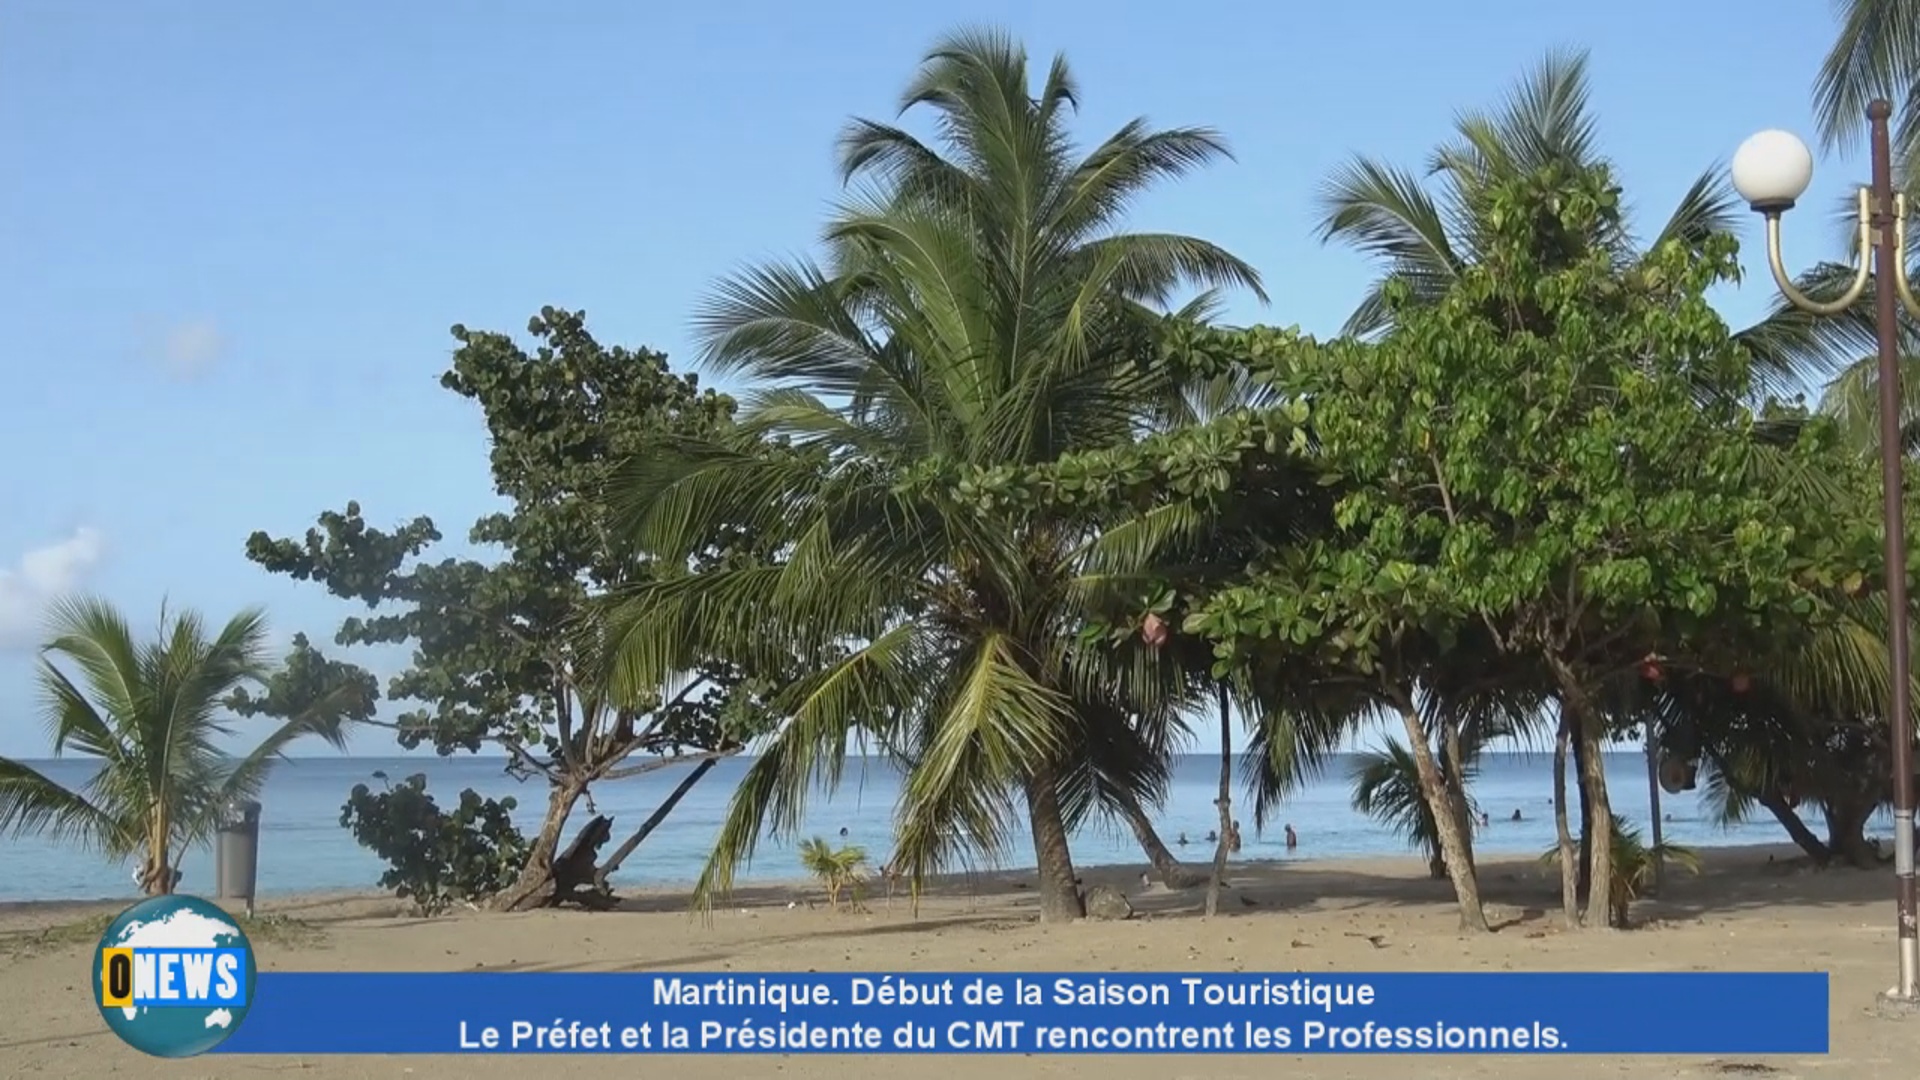 [Vidéo]Onews  Martinique. Tourisme le Préfet et la Présidente du CMT rencontrent les Professionnels